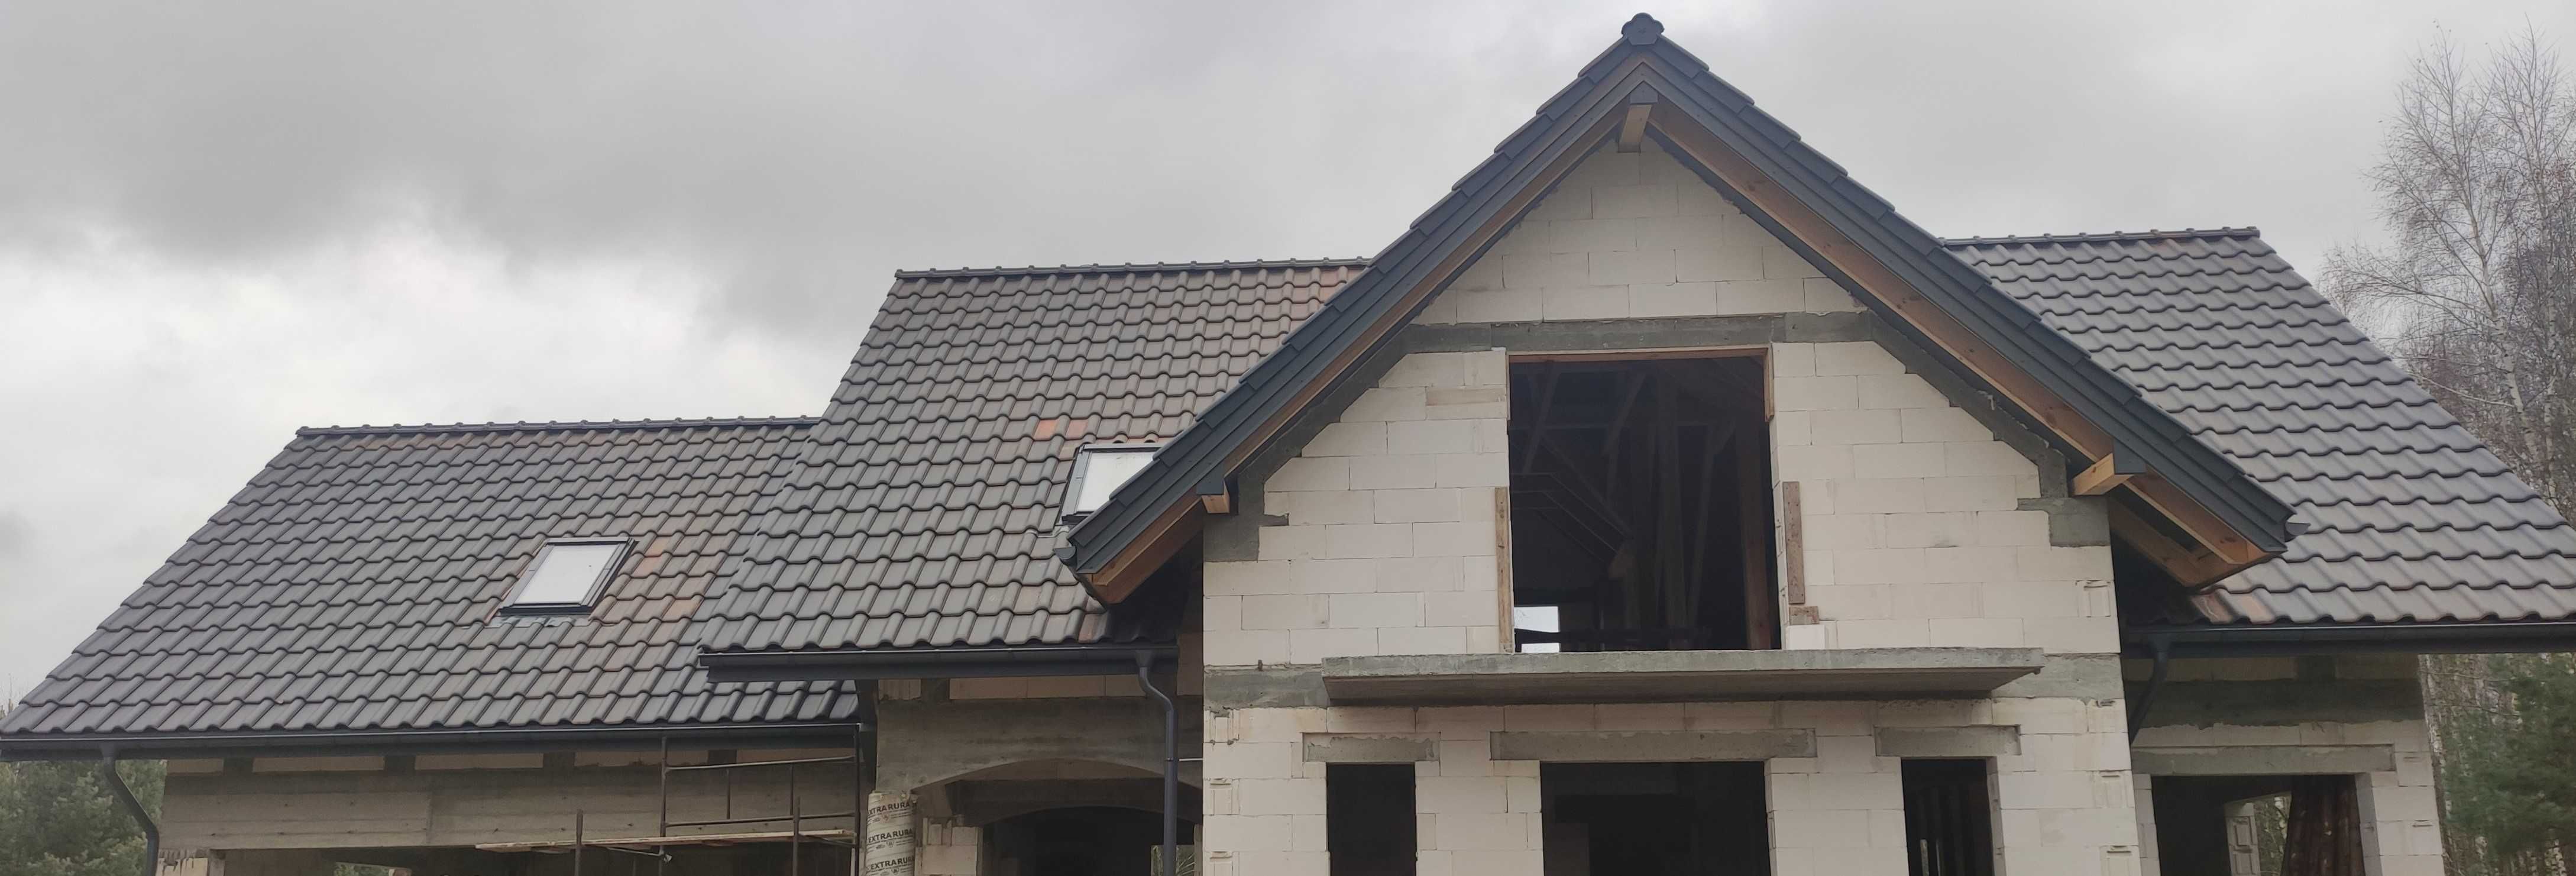 Dachy usługi dekarskie ciesielskie więźba pokrycia dachowe